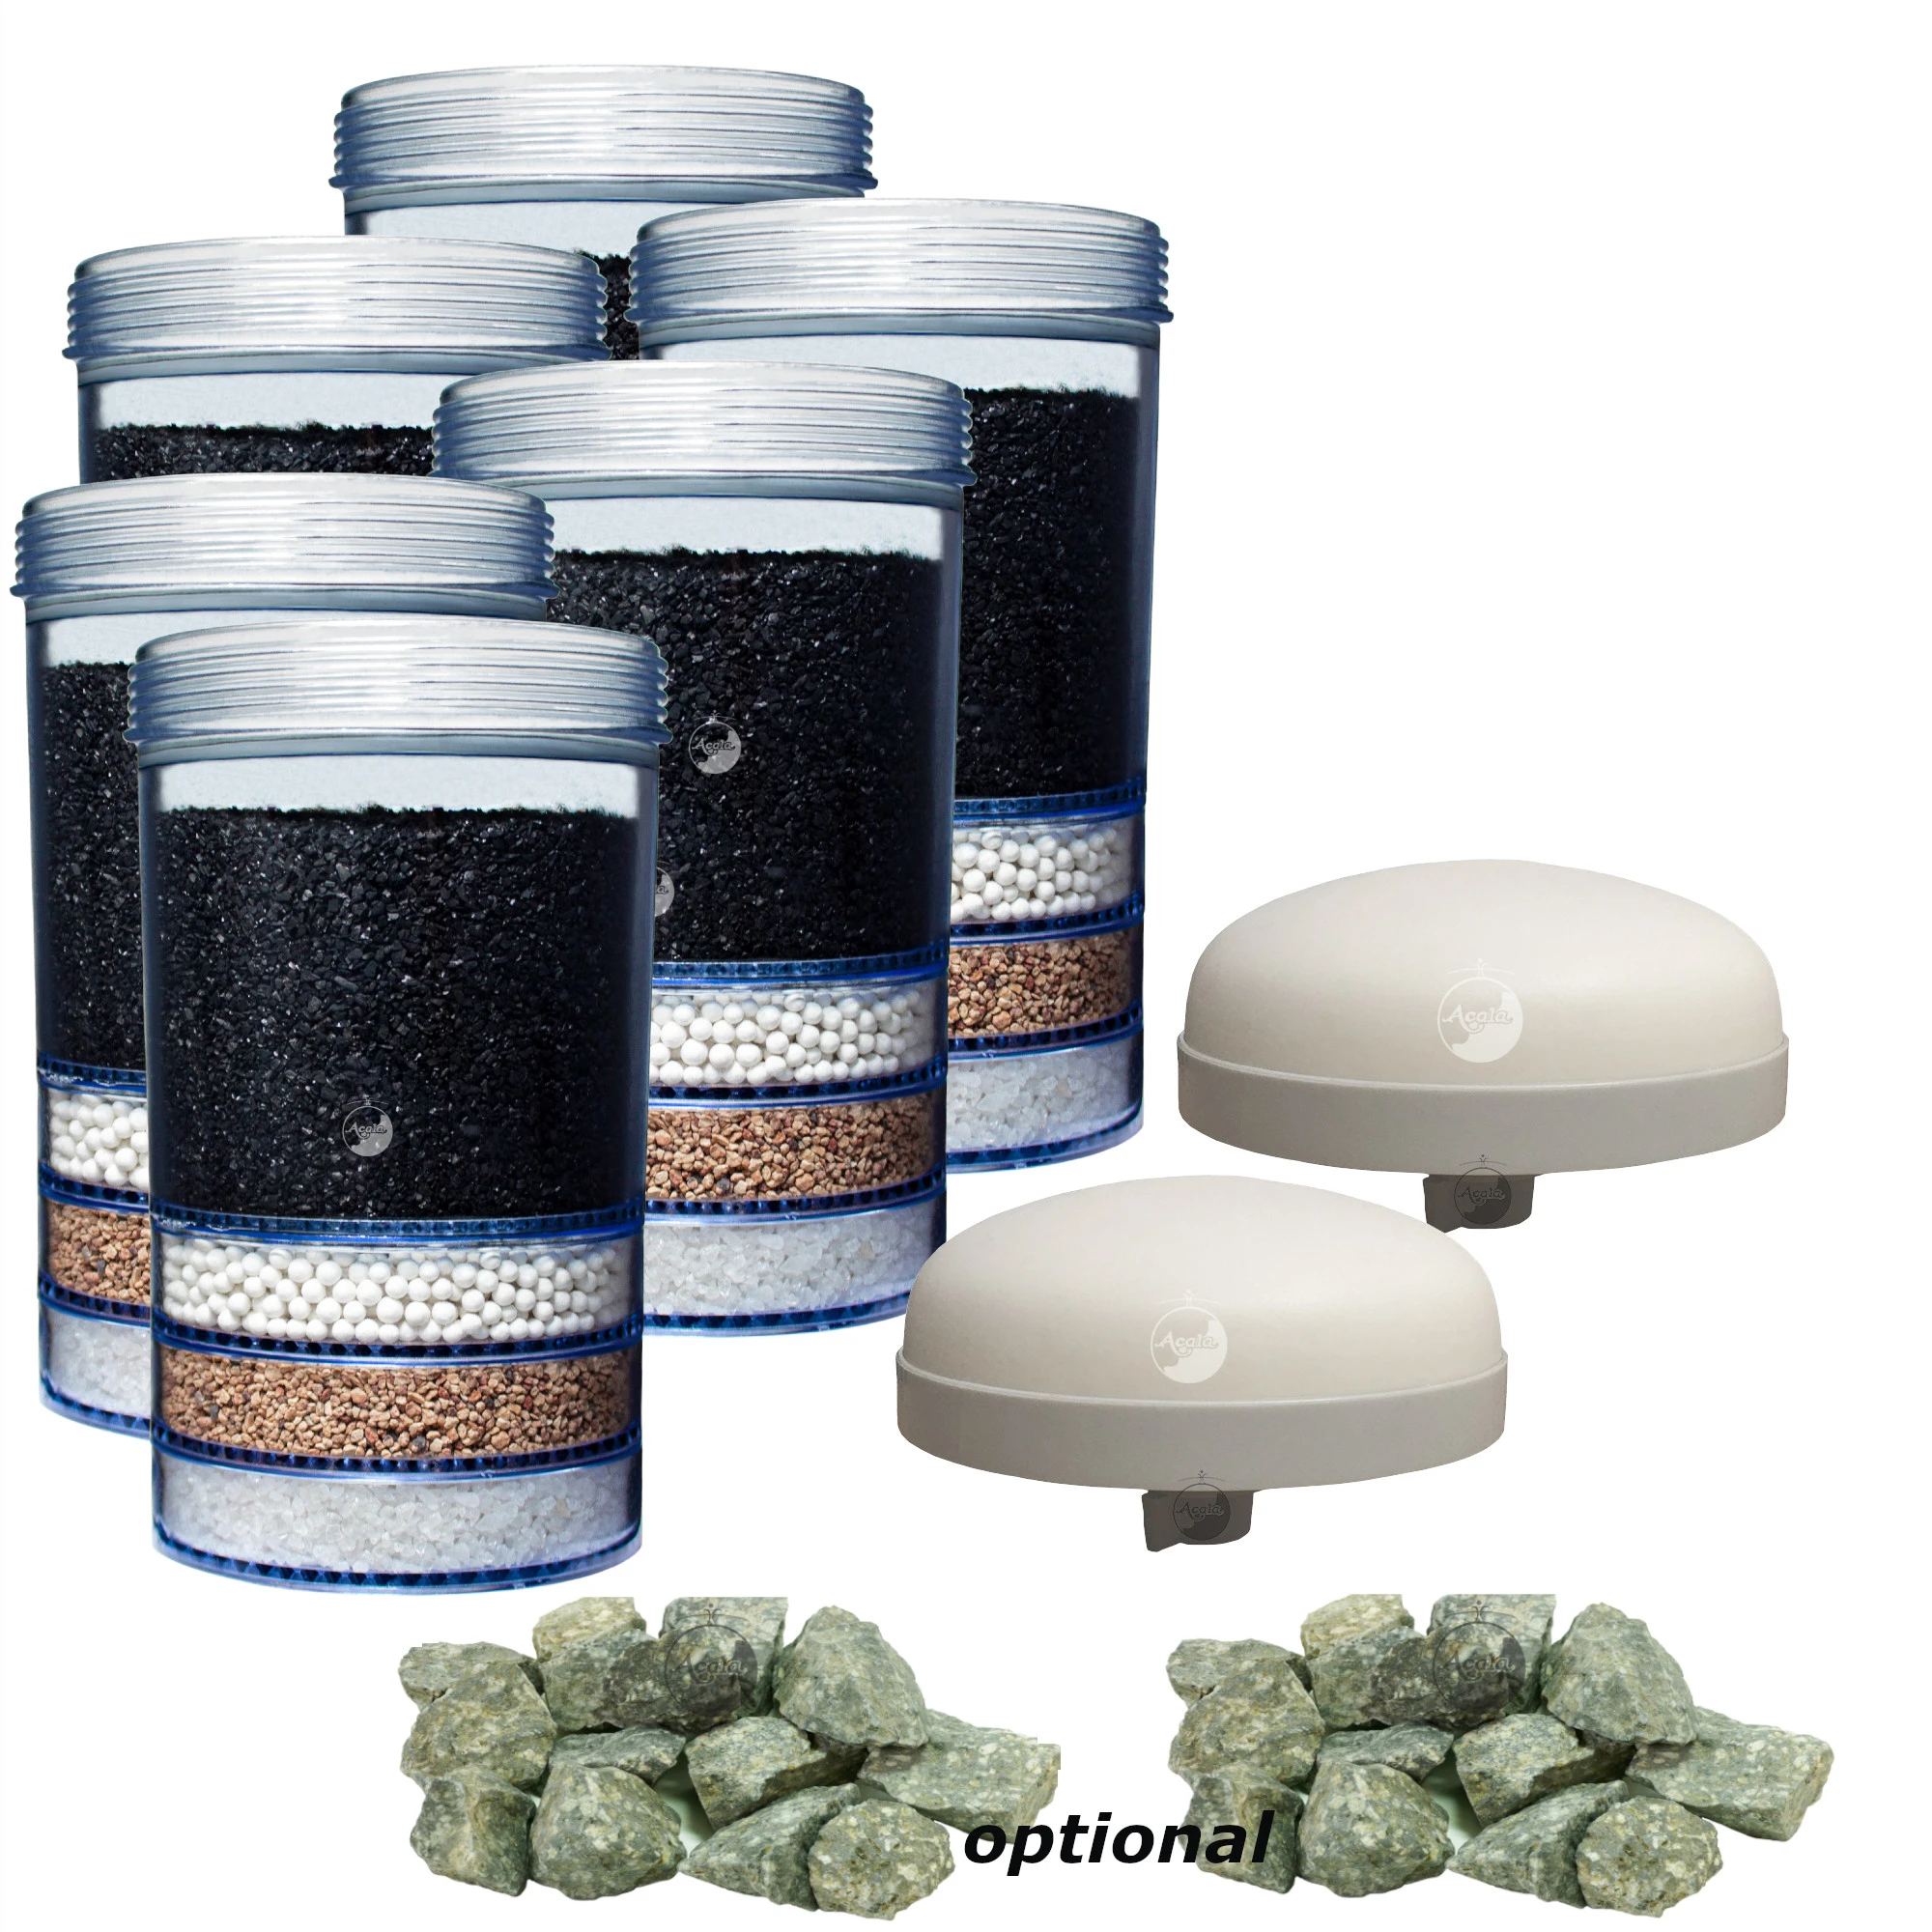 Zu sehen sind sechs Essence Filterkartuschen für Acala Standwasserfilter, zwei flache Keramik Vorfilter und 2 Haufen mit grau grünen Mineralsteinen vor weißem Hintergrund. Das Bild zeigt ein Angebot für zwei Jahre, für den Mini.